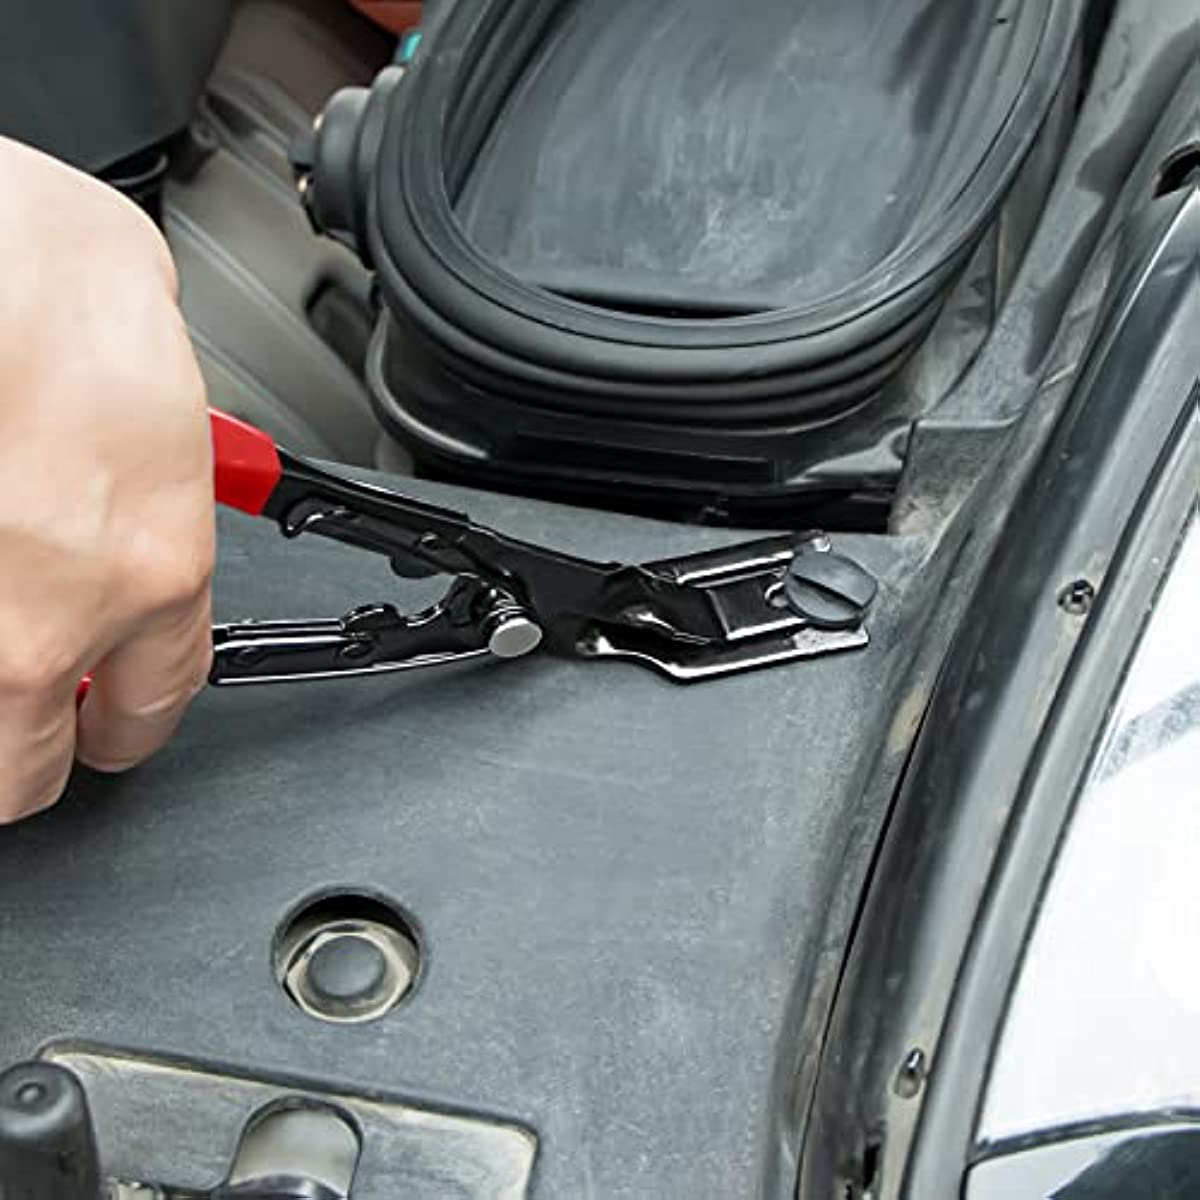 Trim Removal Tool Car Upholstery Repair Kit Car Door Audio Panel Set  Fastener